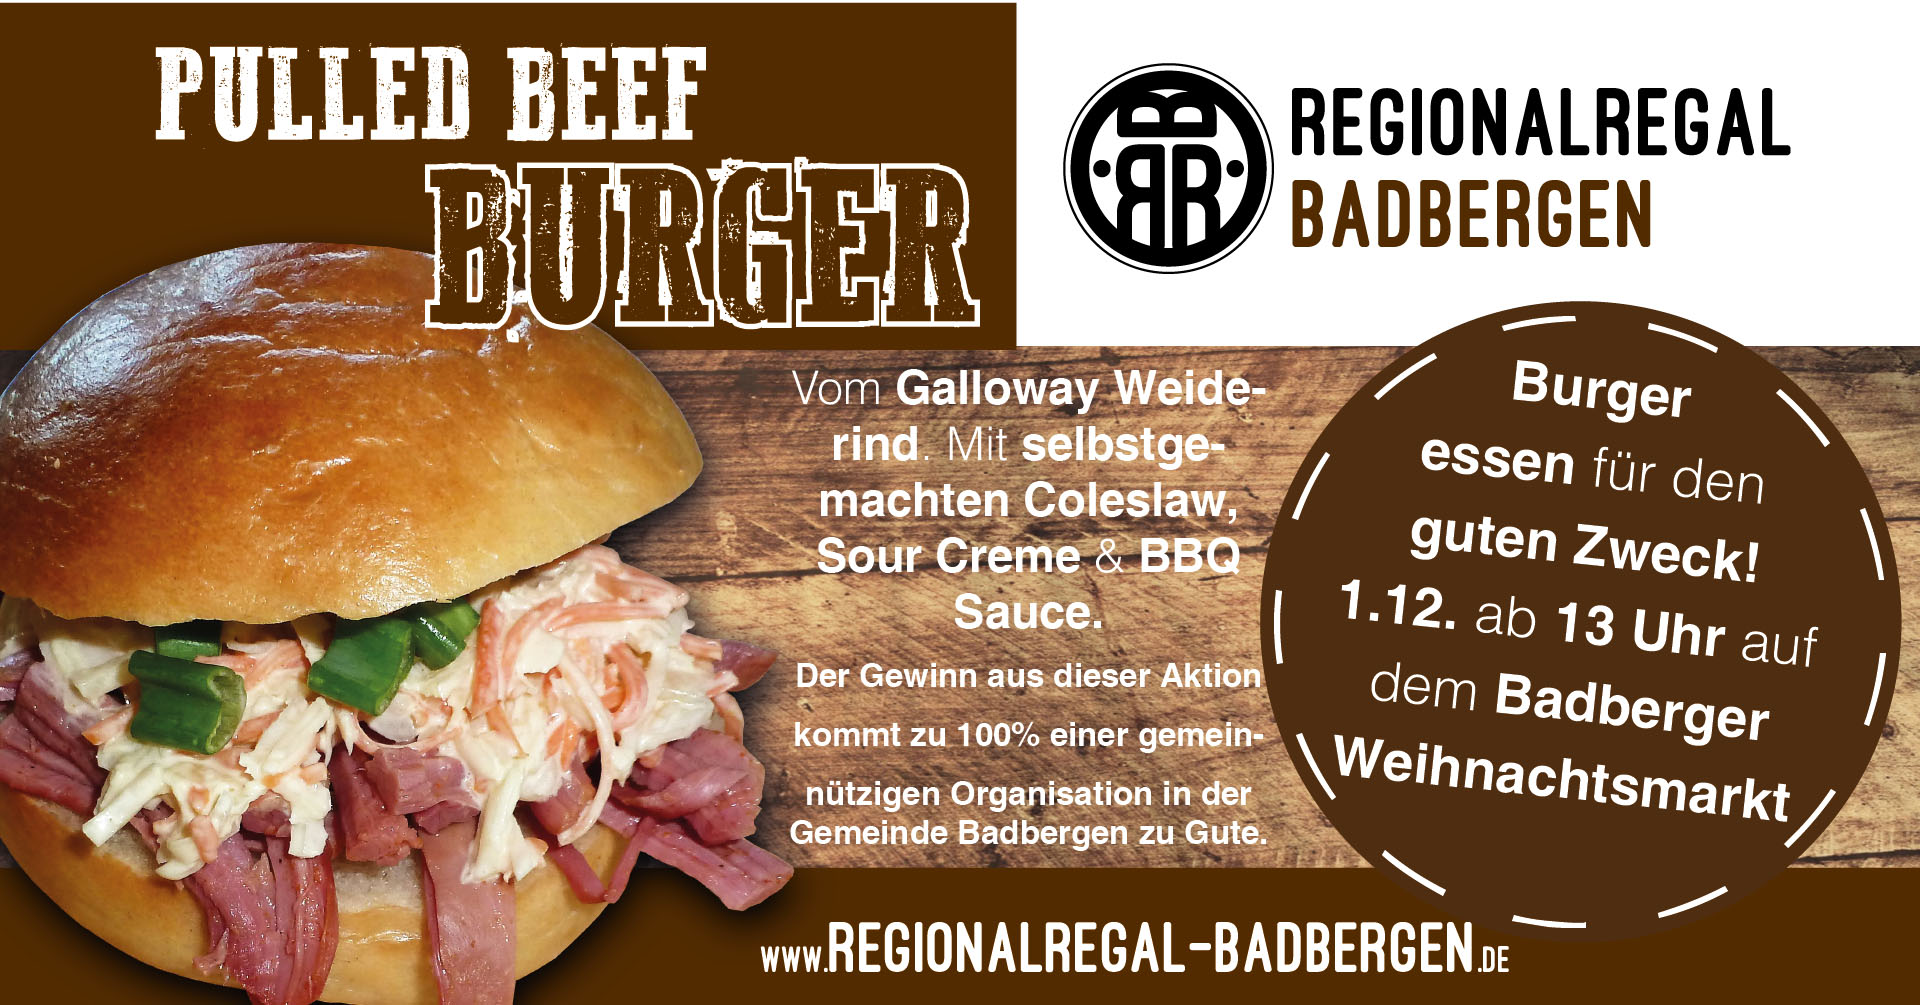 Burger essen für den guten Zweck - Badberger Weihnachtsmarkt 1.12.19 -  Pulled Beef Burger